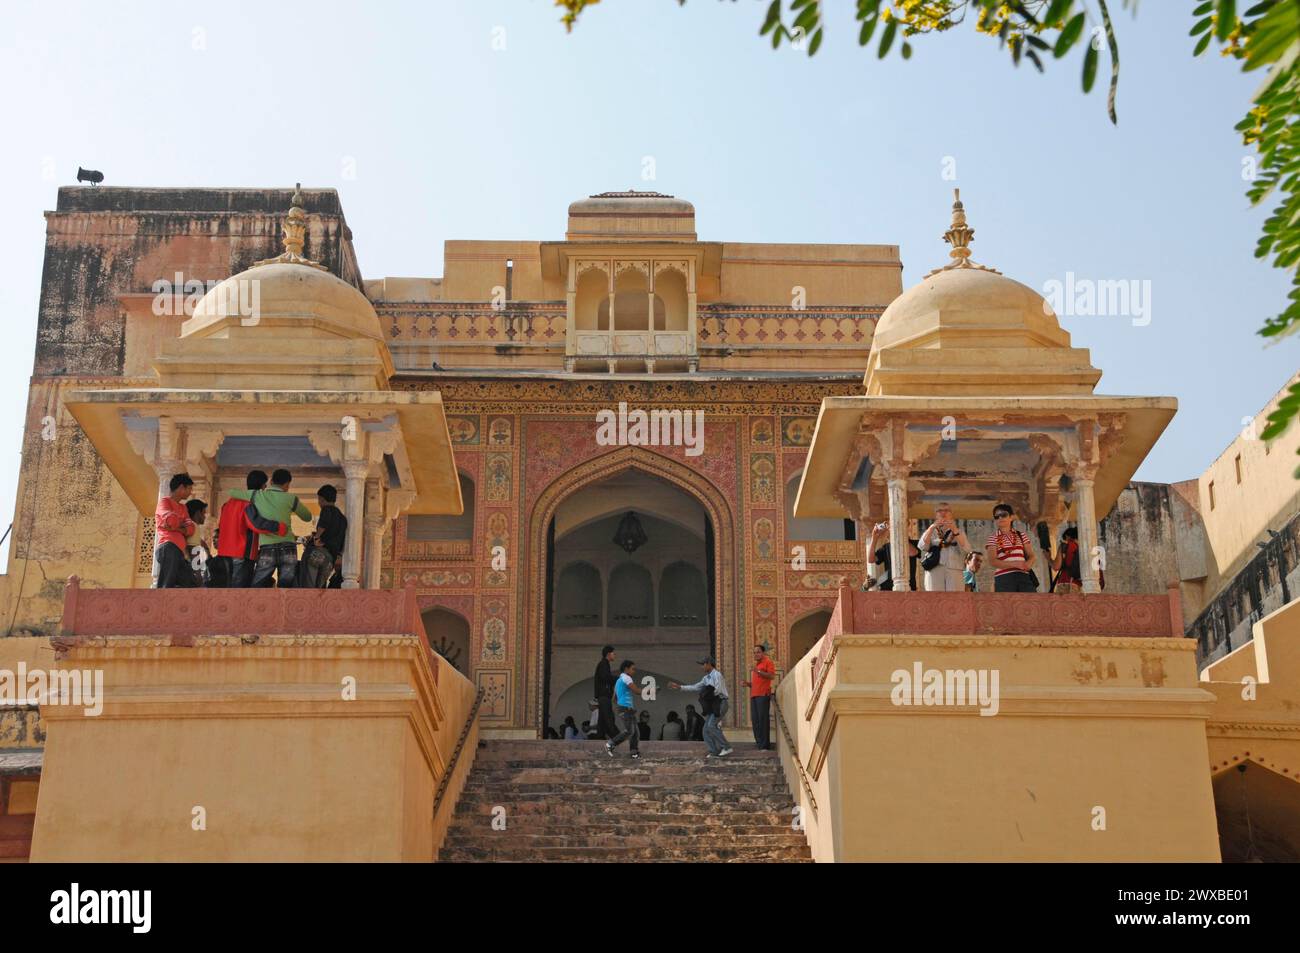 Les touristes visitent un temple historique en Inde à la lumière du jour, Rajasthan, Inde du Nord, Inde Banque D'Images